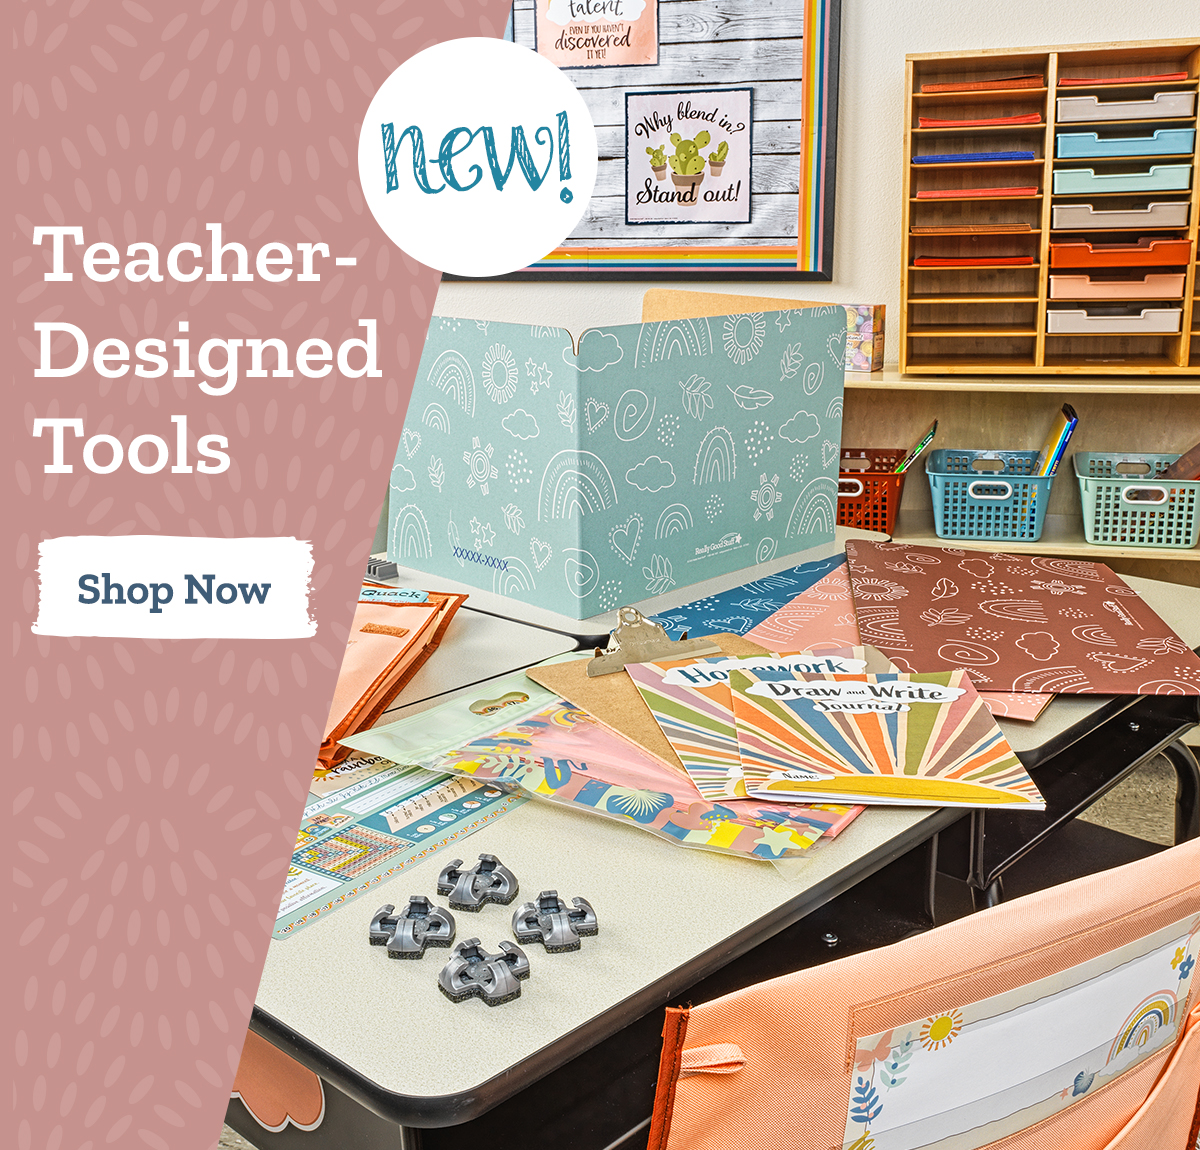 Teacher-Designed Tools